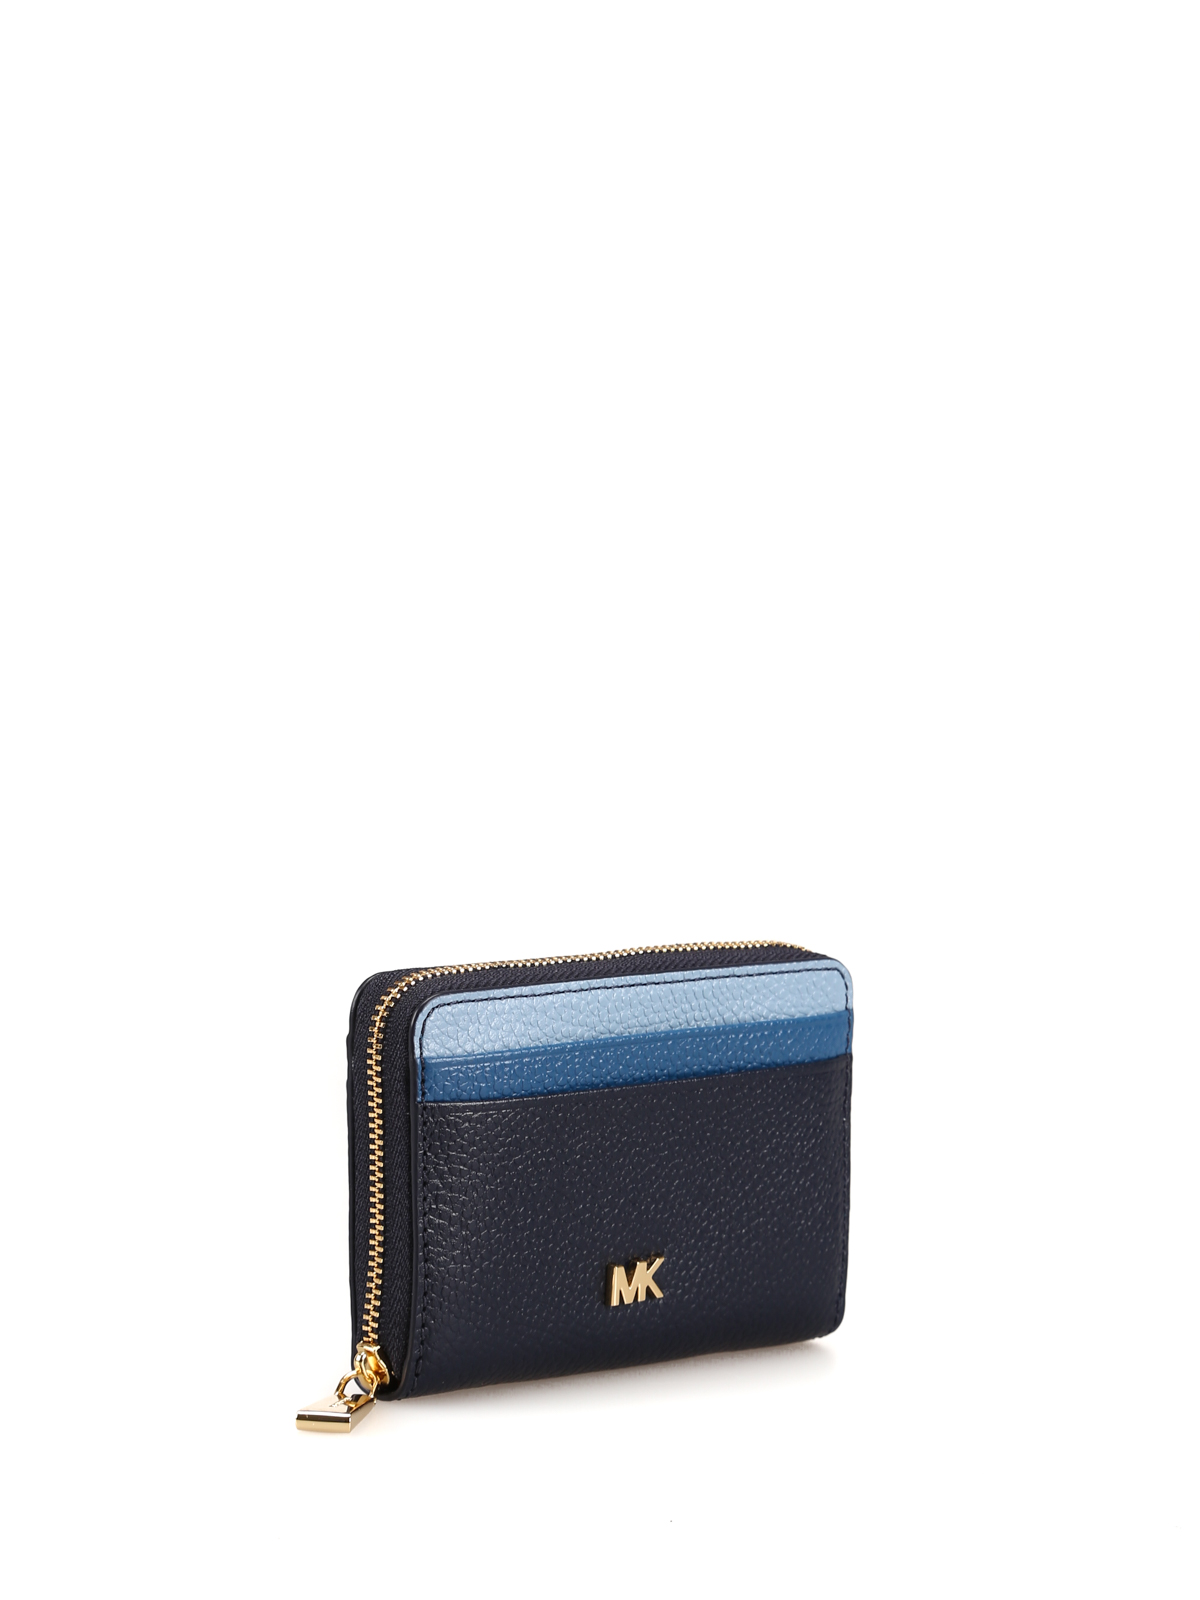 MK wallets online